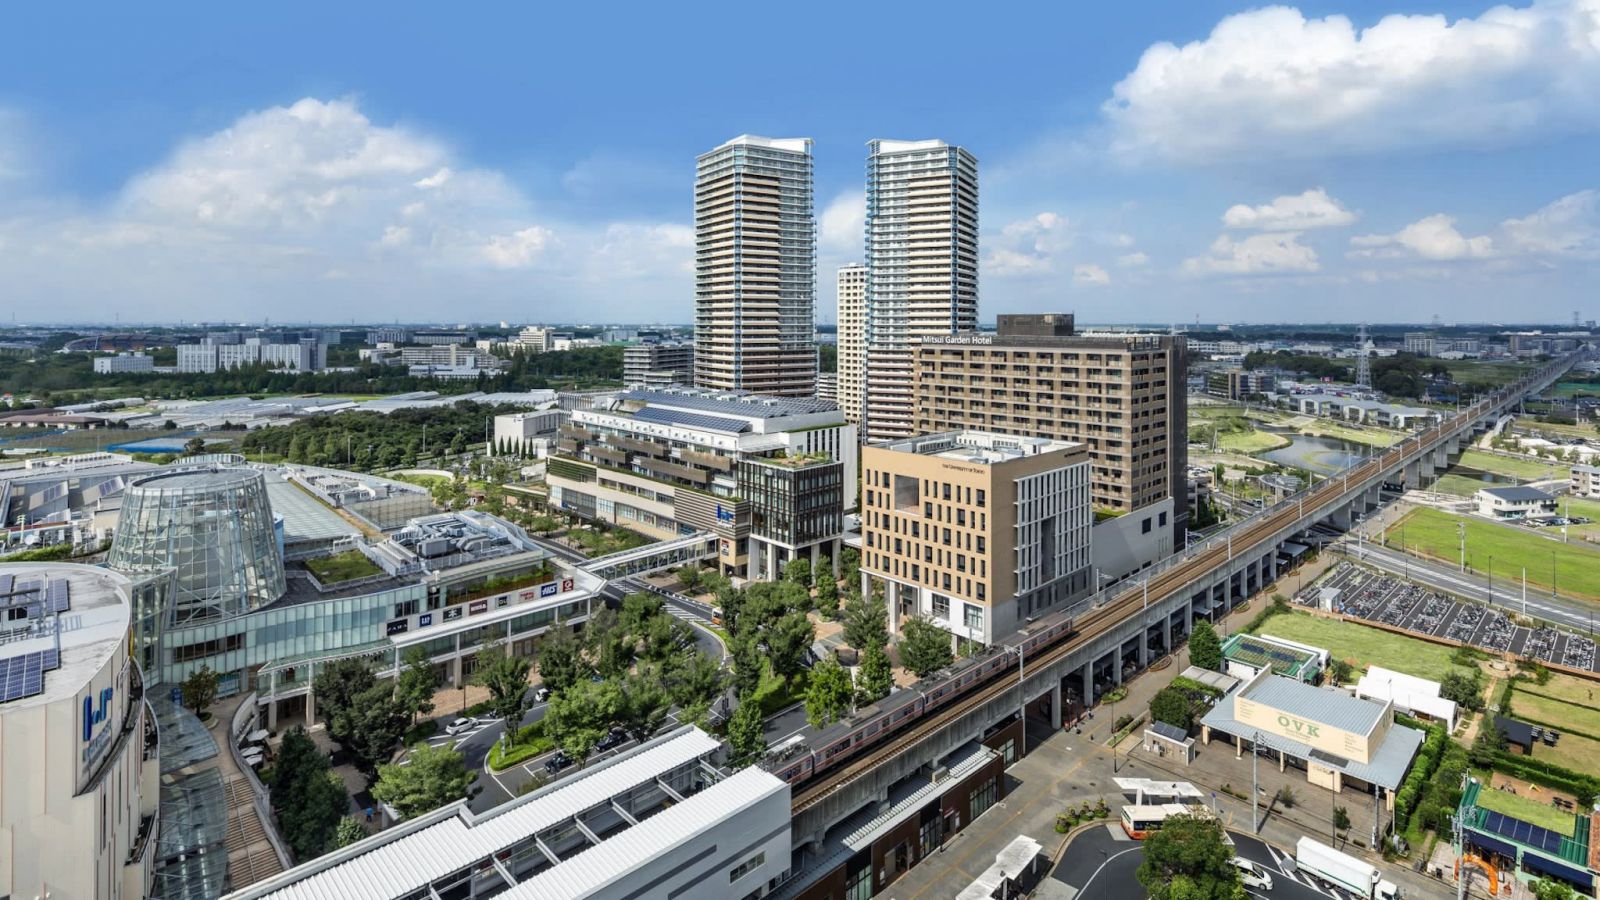 Dự án này gần Tokyo, được gọi là Thành phố thông minh Kashiwa-no-ha, được điều hành bởi một tập đoàn công tư bao gồm nhà phát triển bất động sản Mitsui Fudosan.